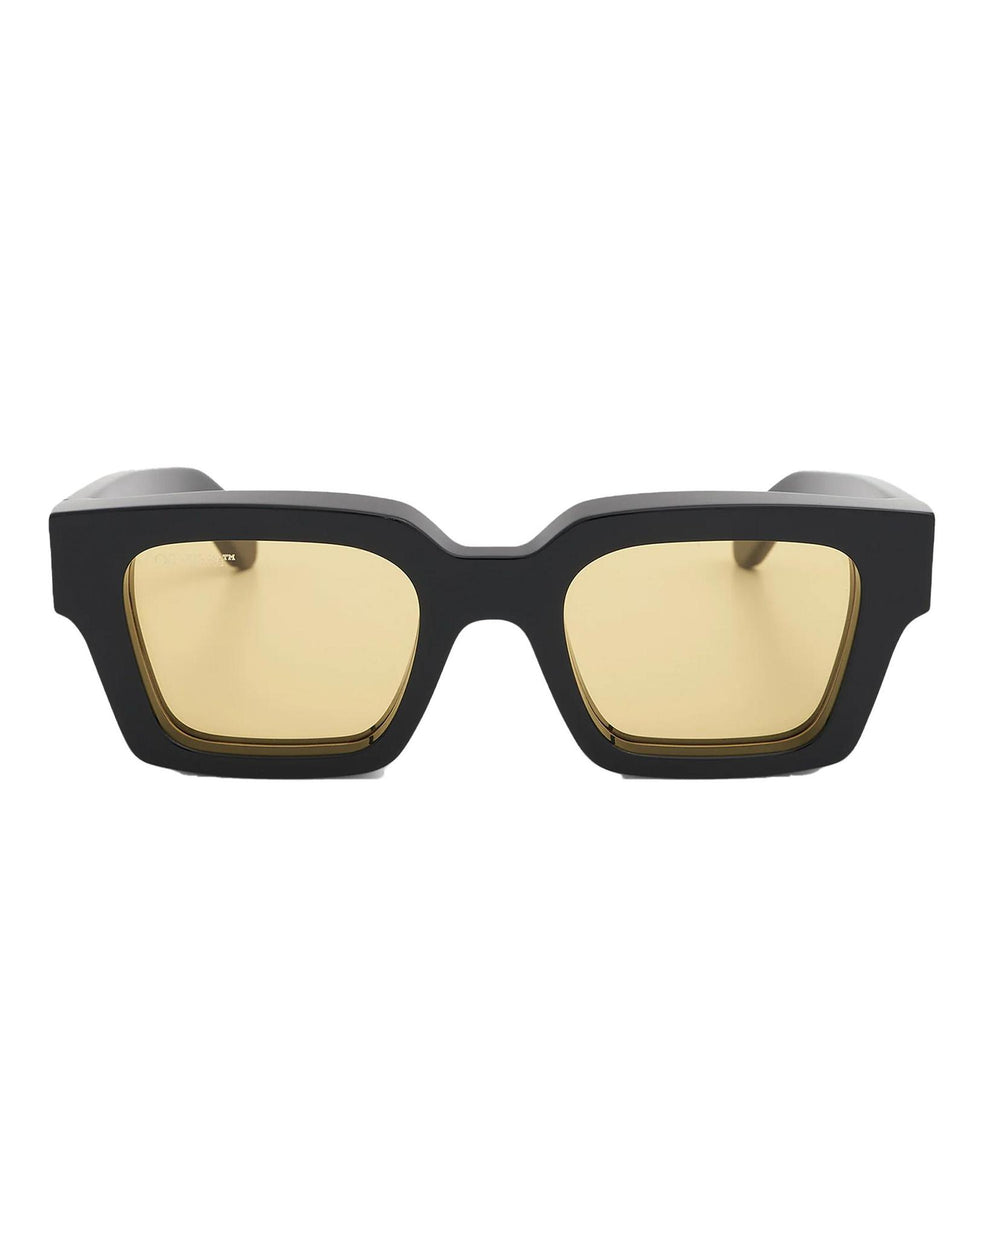 OFF-WHITE Mari Rectangular Frame Sunglasses Black/Yellow